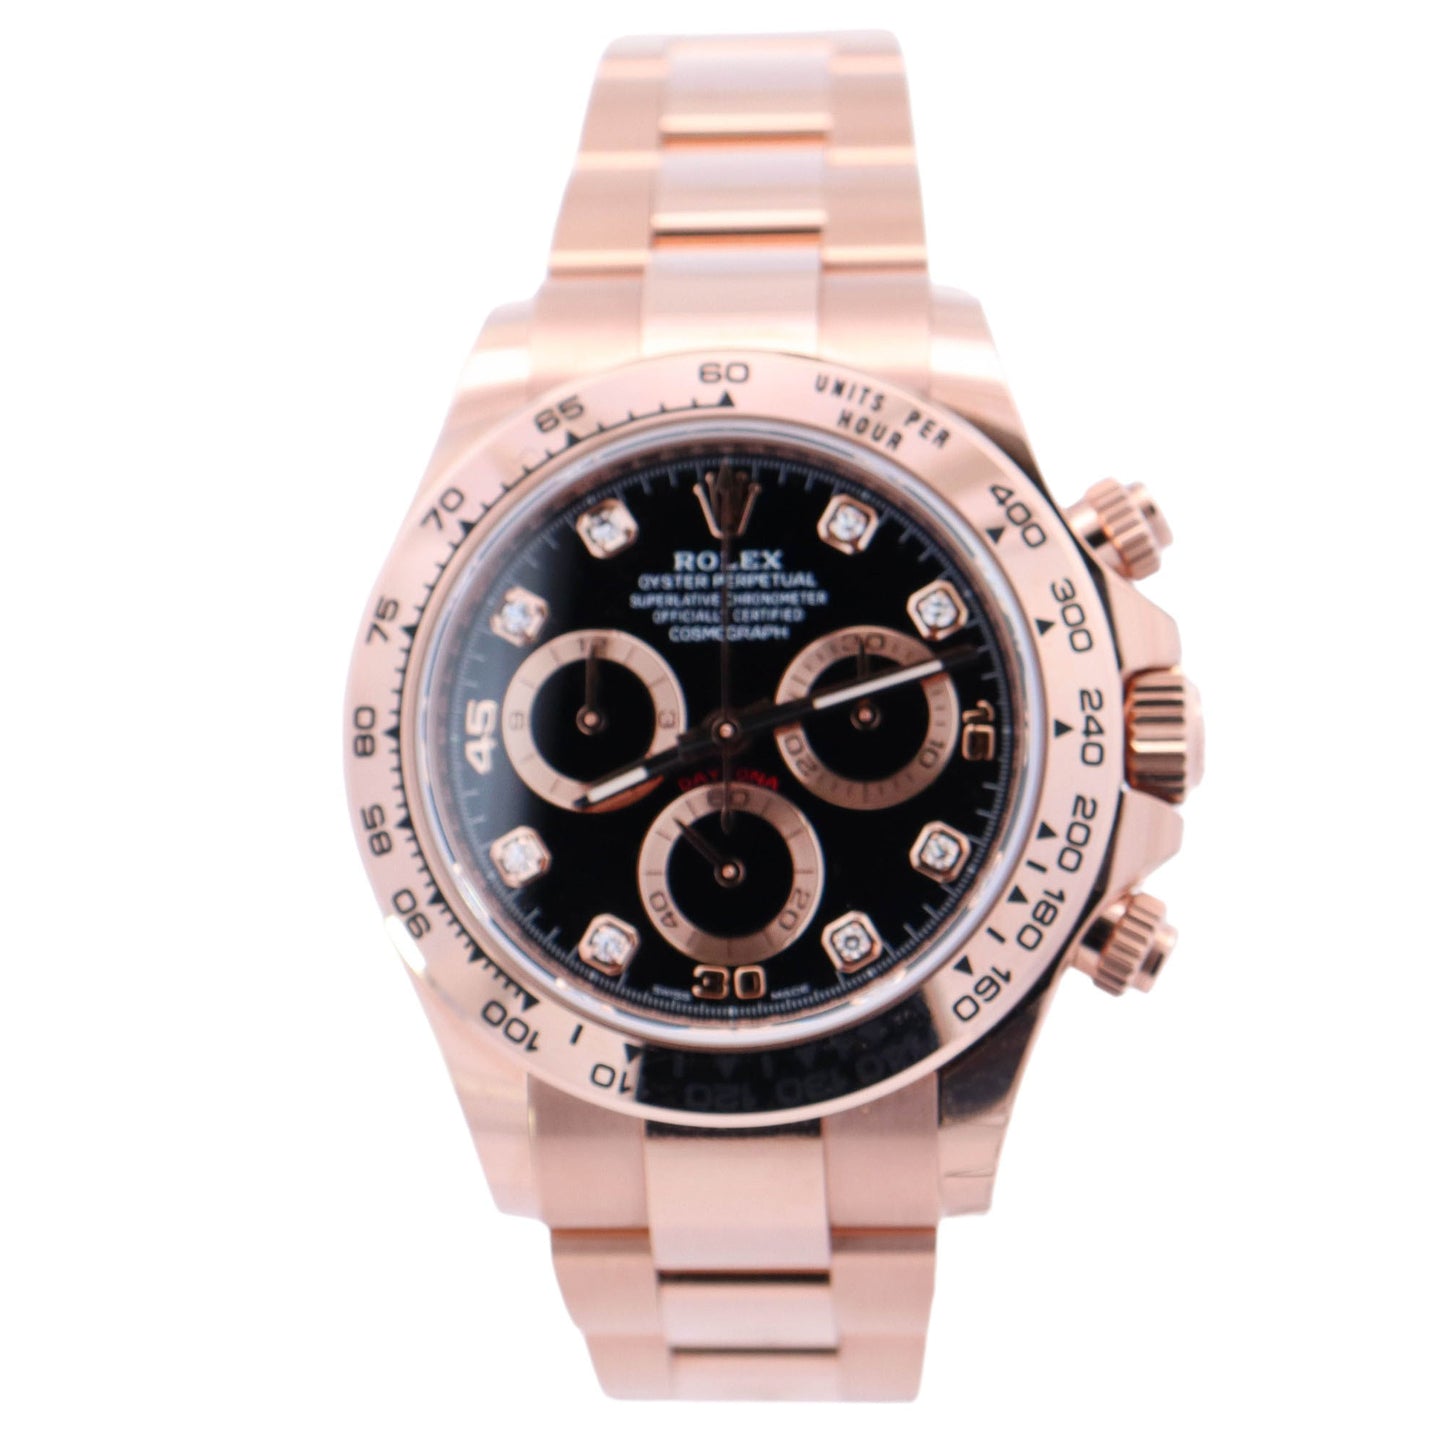 Rolex Daytona Rose Gold 40mm Black Diamond Dial Watch Reference# 116505 - Happy Jewelers Fine Jewelry Lifetime Warranty